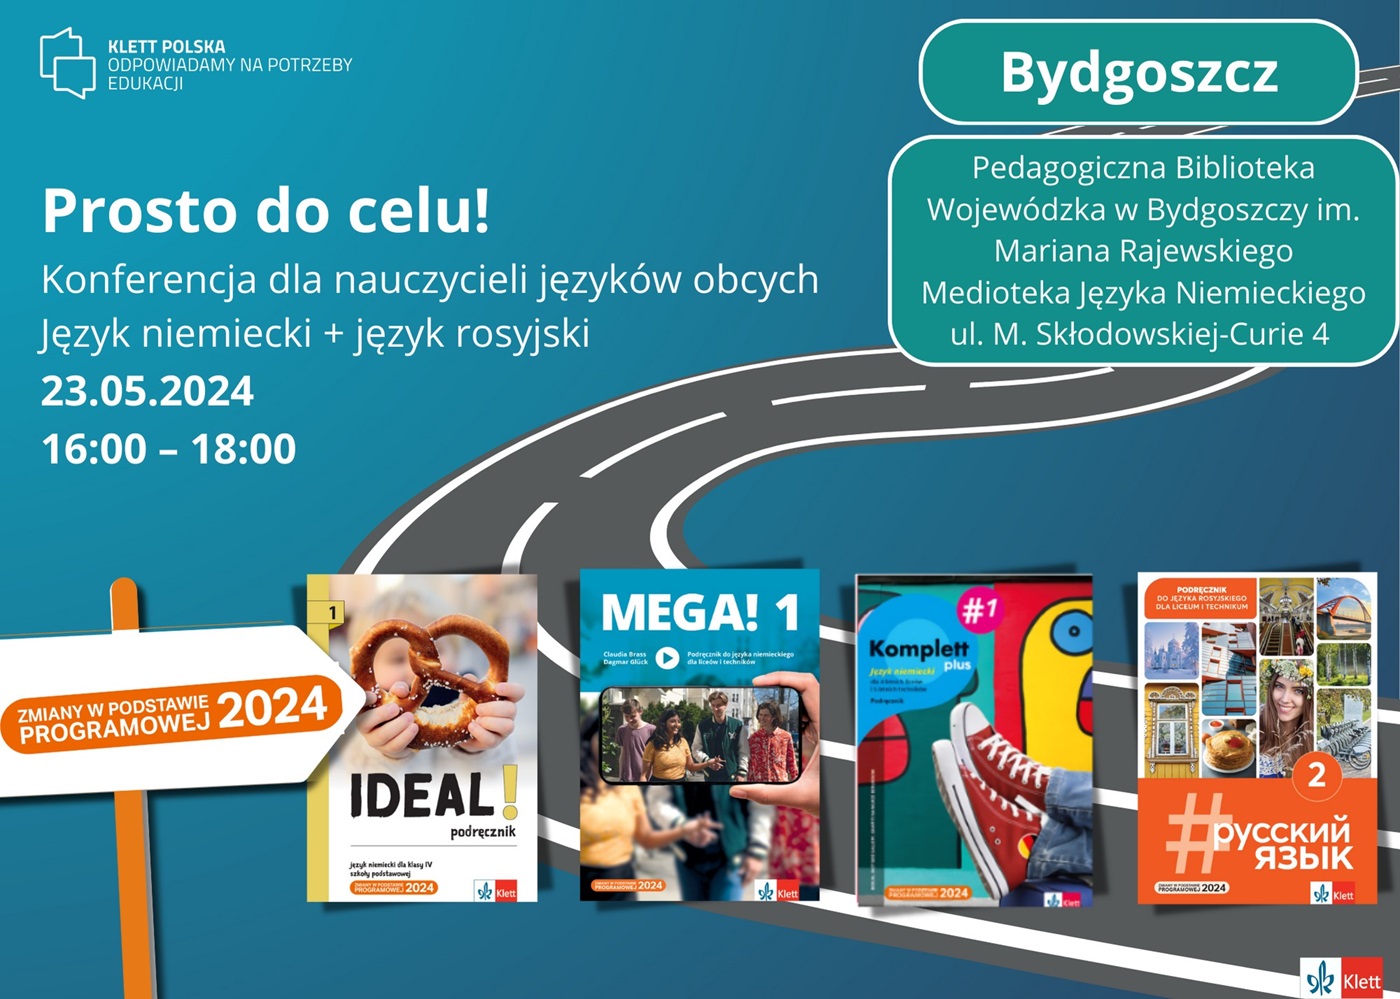 Plakat informacyjny konferencji dla nauczycieli języka niemieckiego i rosyjskiego pt. "Prosto do celu".